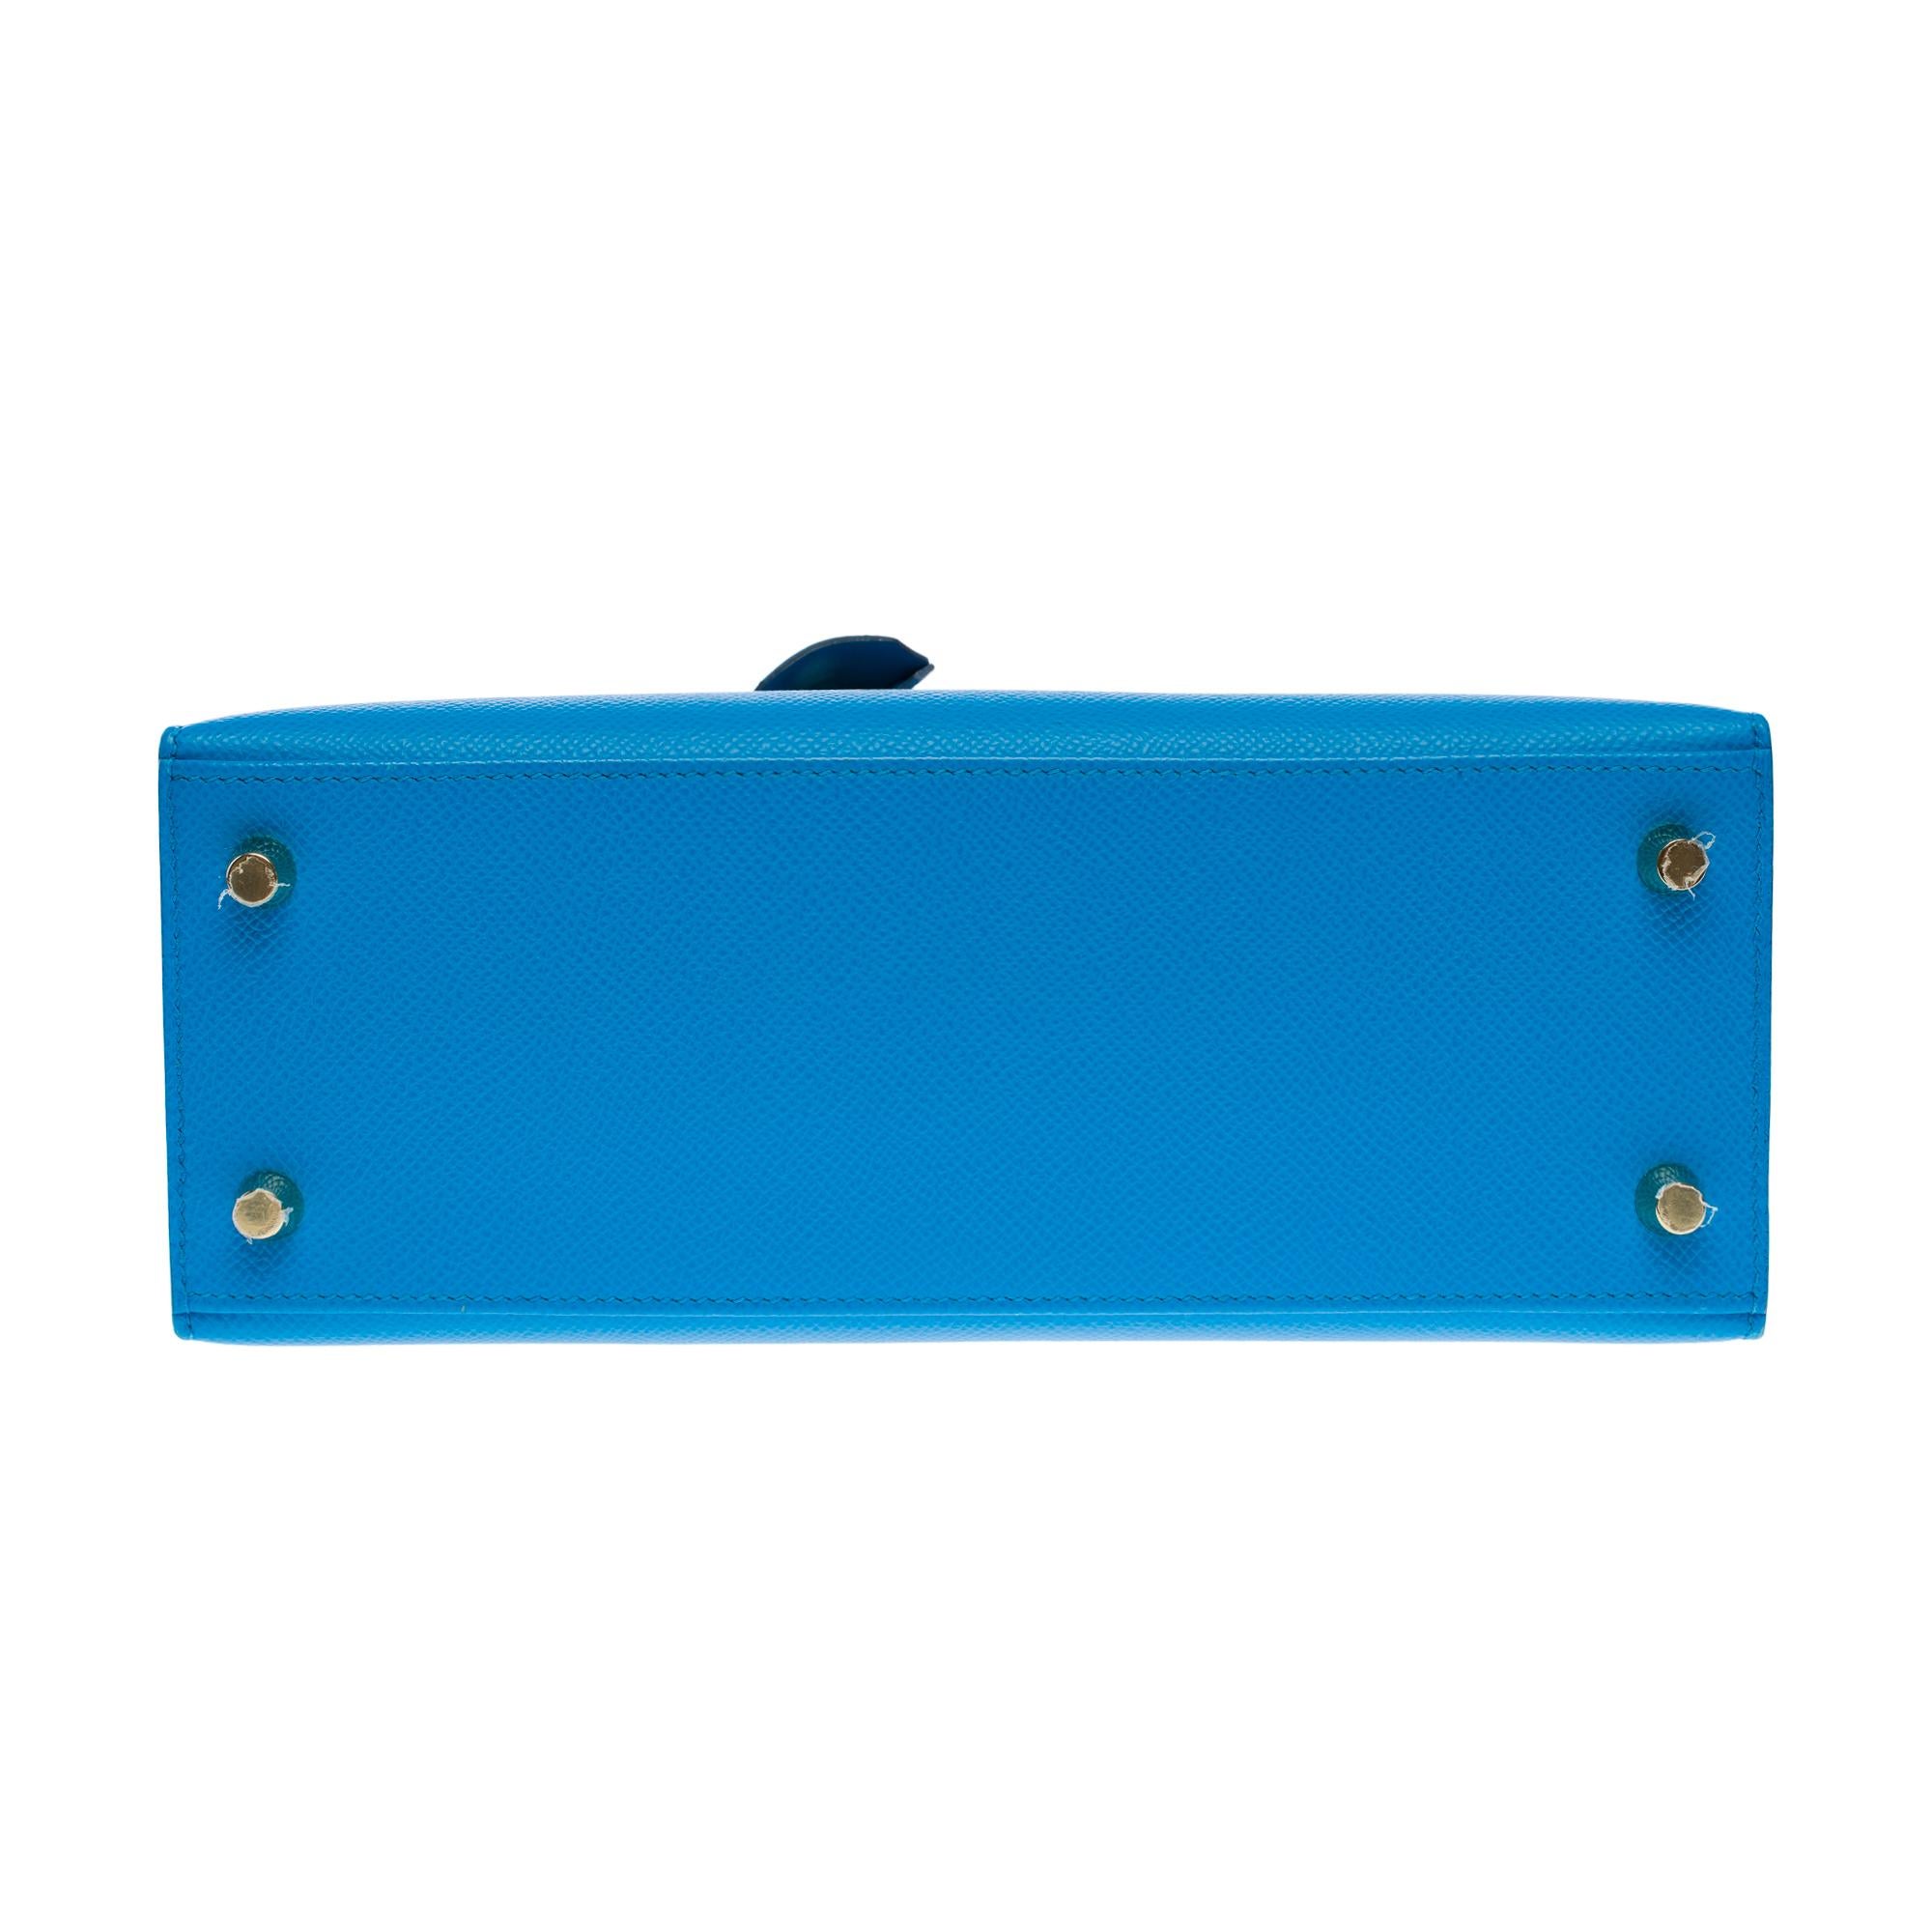 Amazing Hermès Kelly 25 handbag strap in Blue Frida Epsom calf leather, GHW For Sale 7